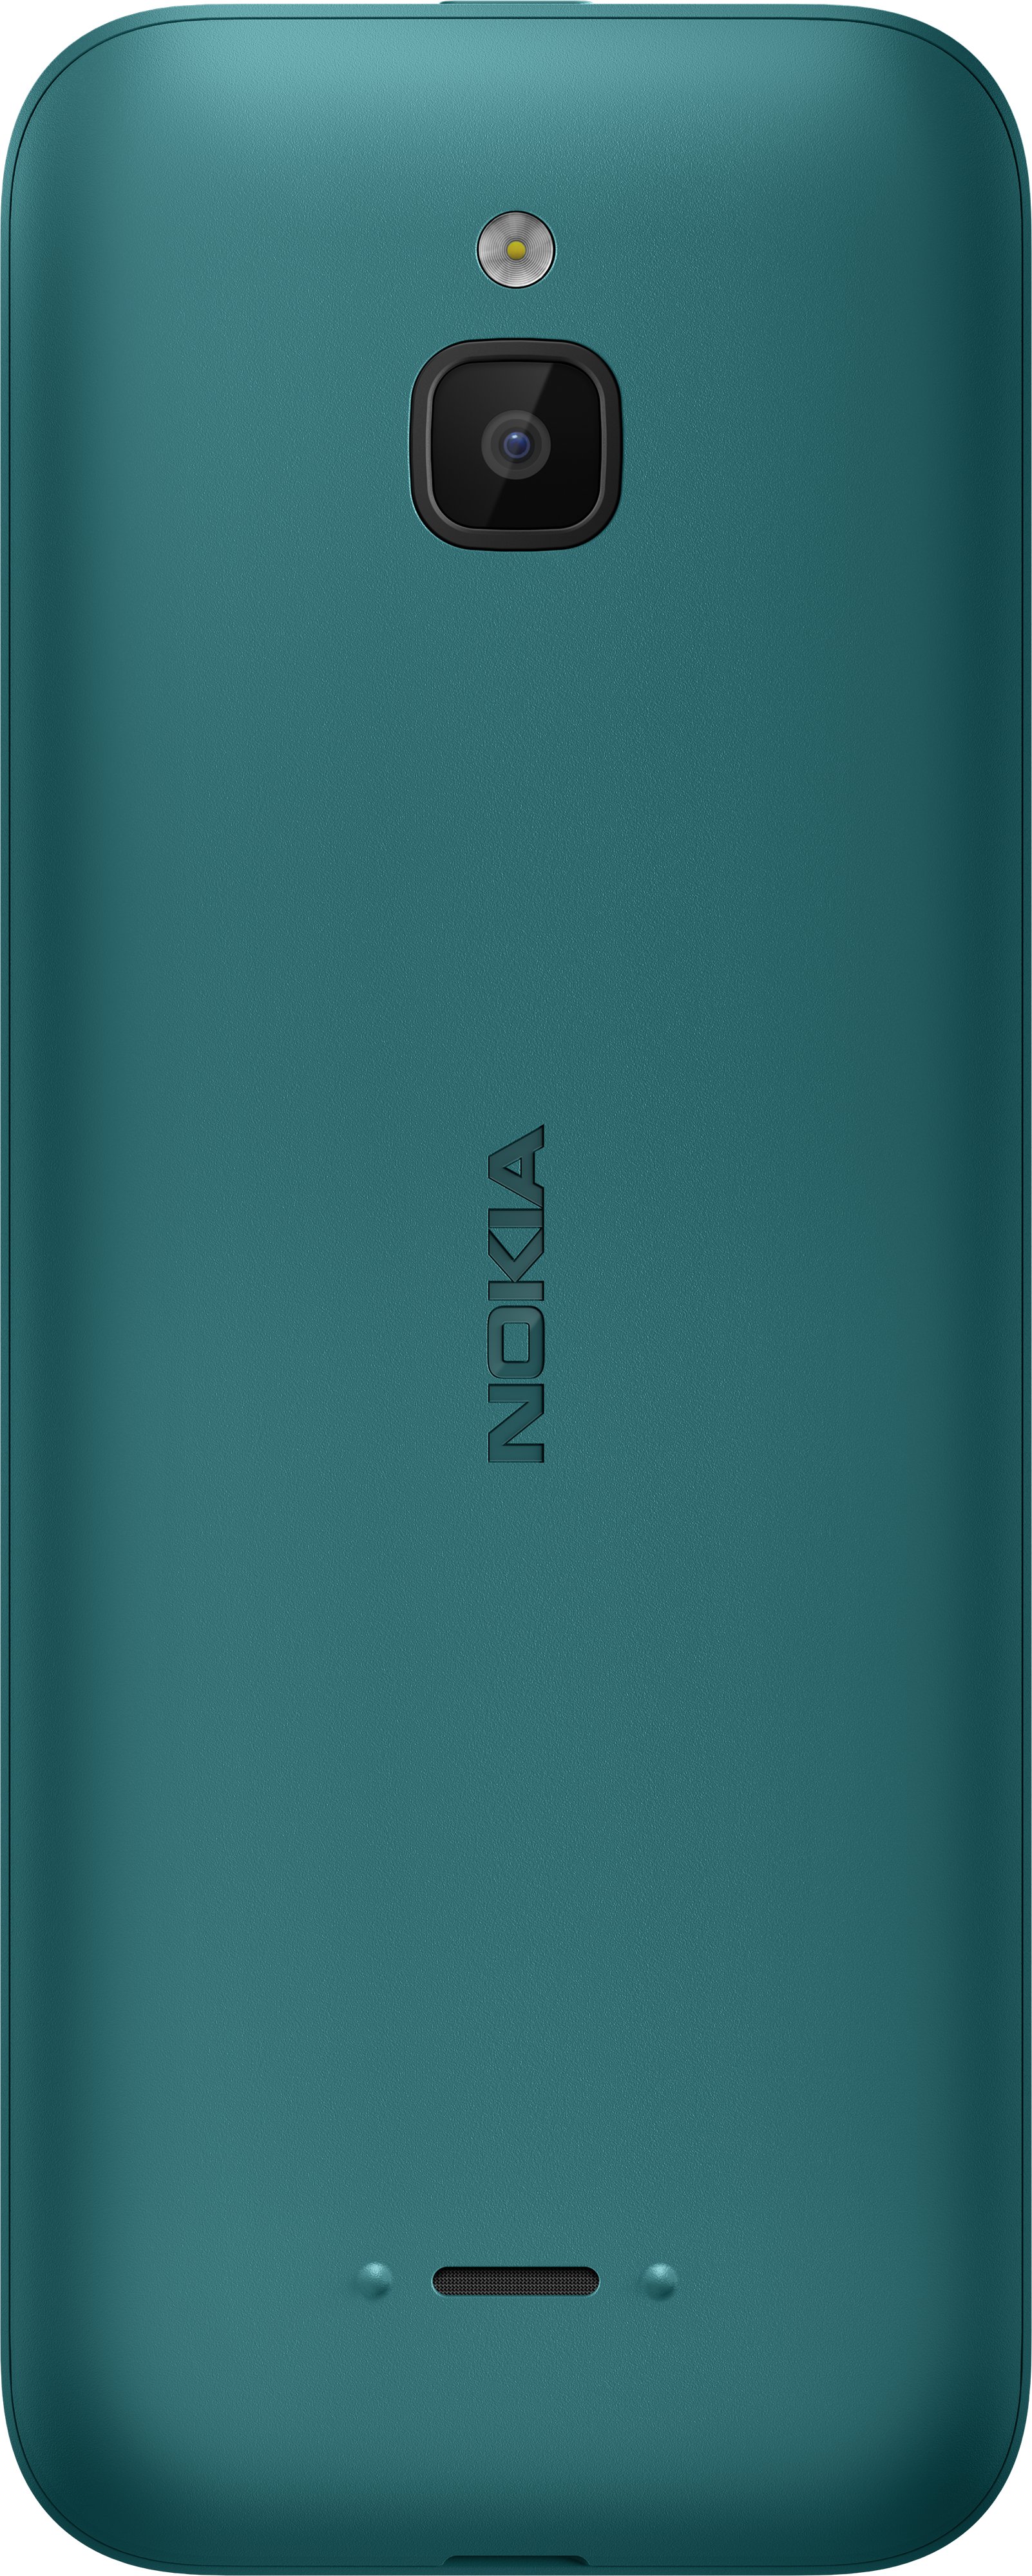 Điện thoại Nokia 6300 cũ chính hãng - bảo hành 1 năm